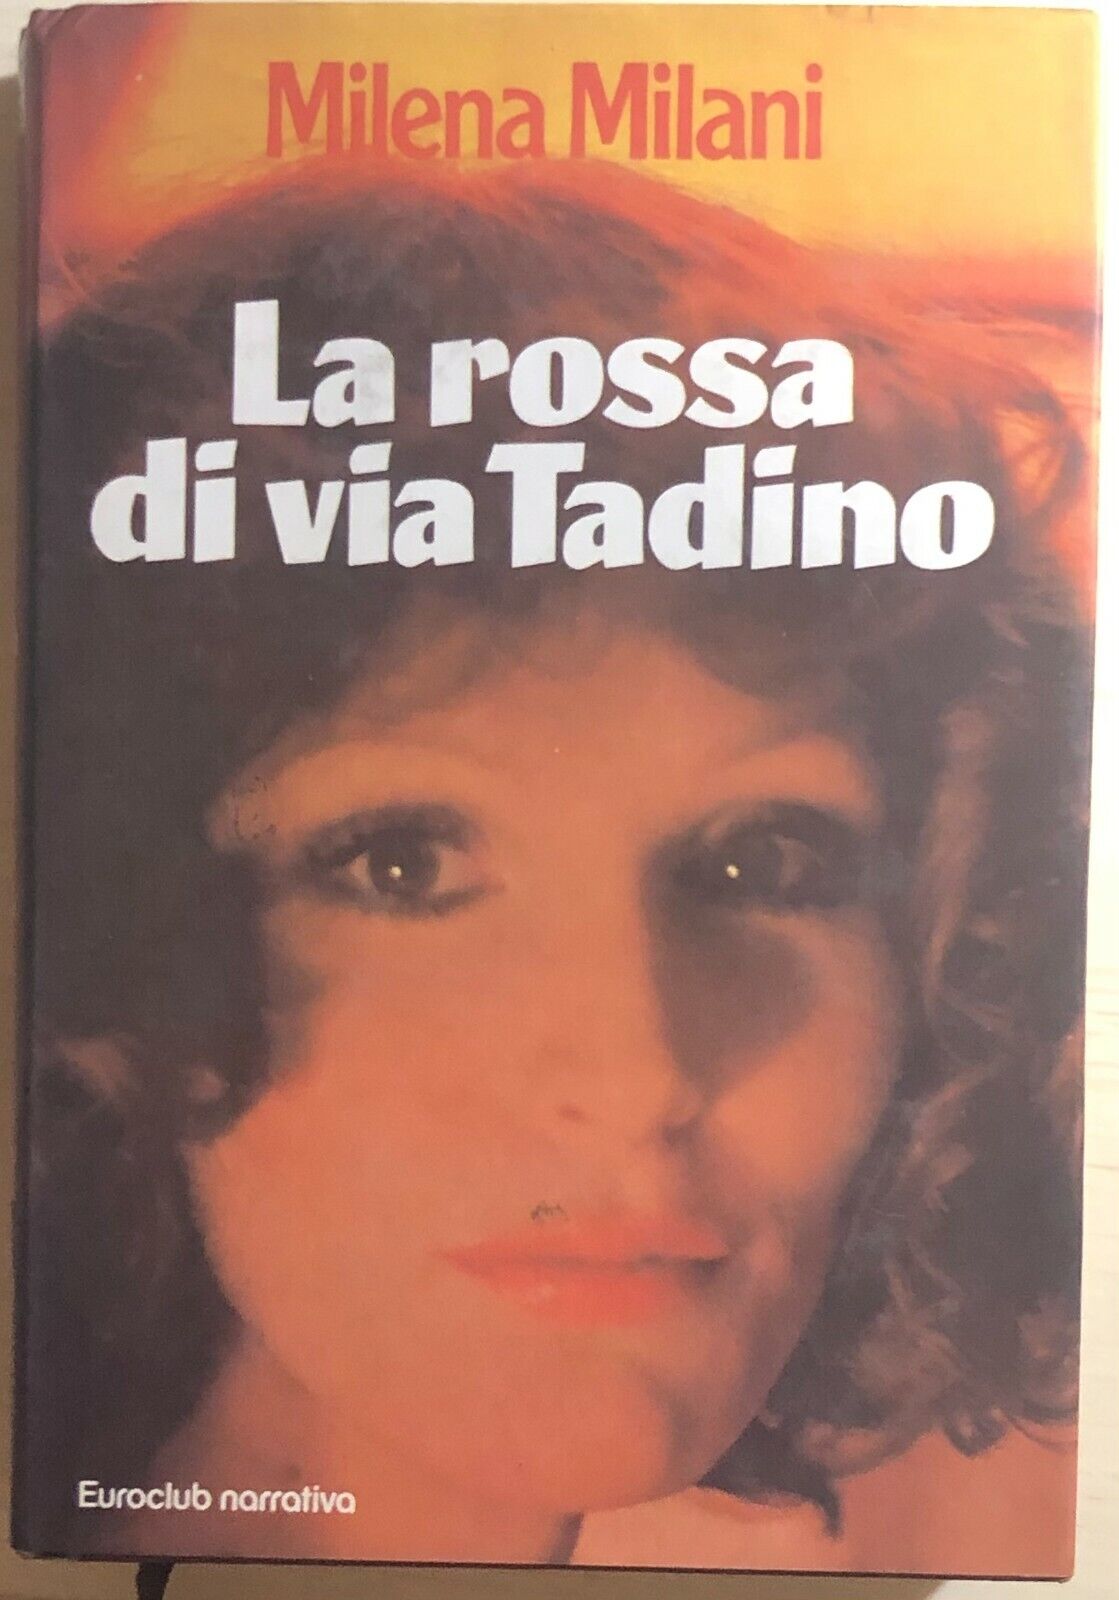 La rossa di via Tadino di Milena Milani, 1980, Euroclub